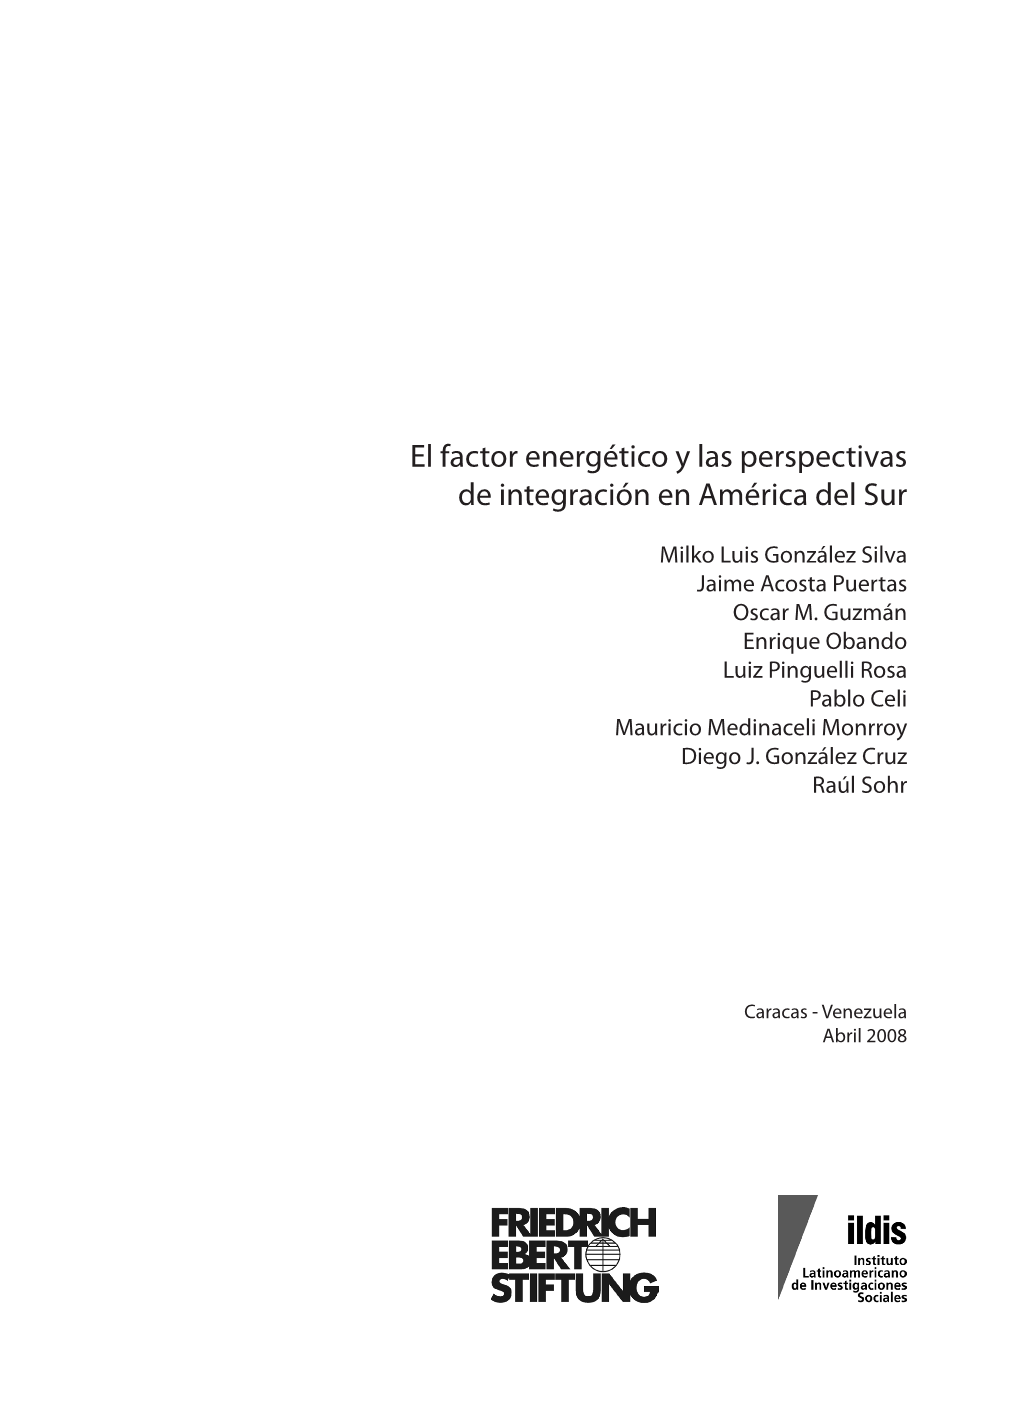 El Factor Energético Y Las Perspectivas De Integración En América Del Sur